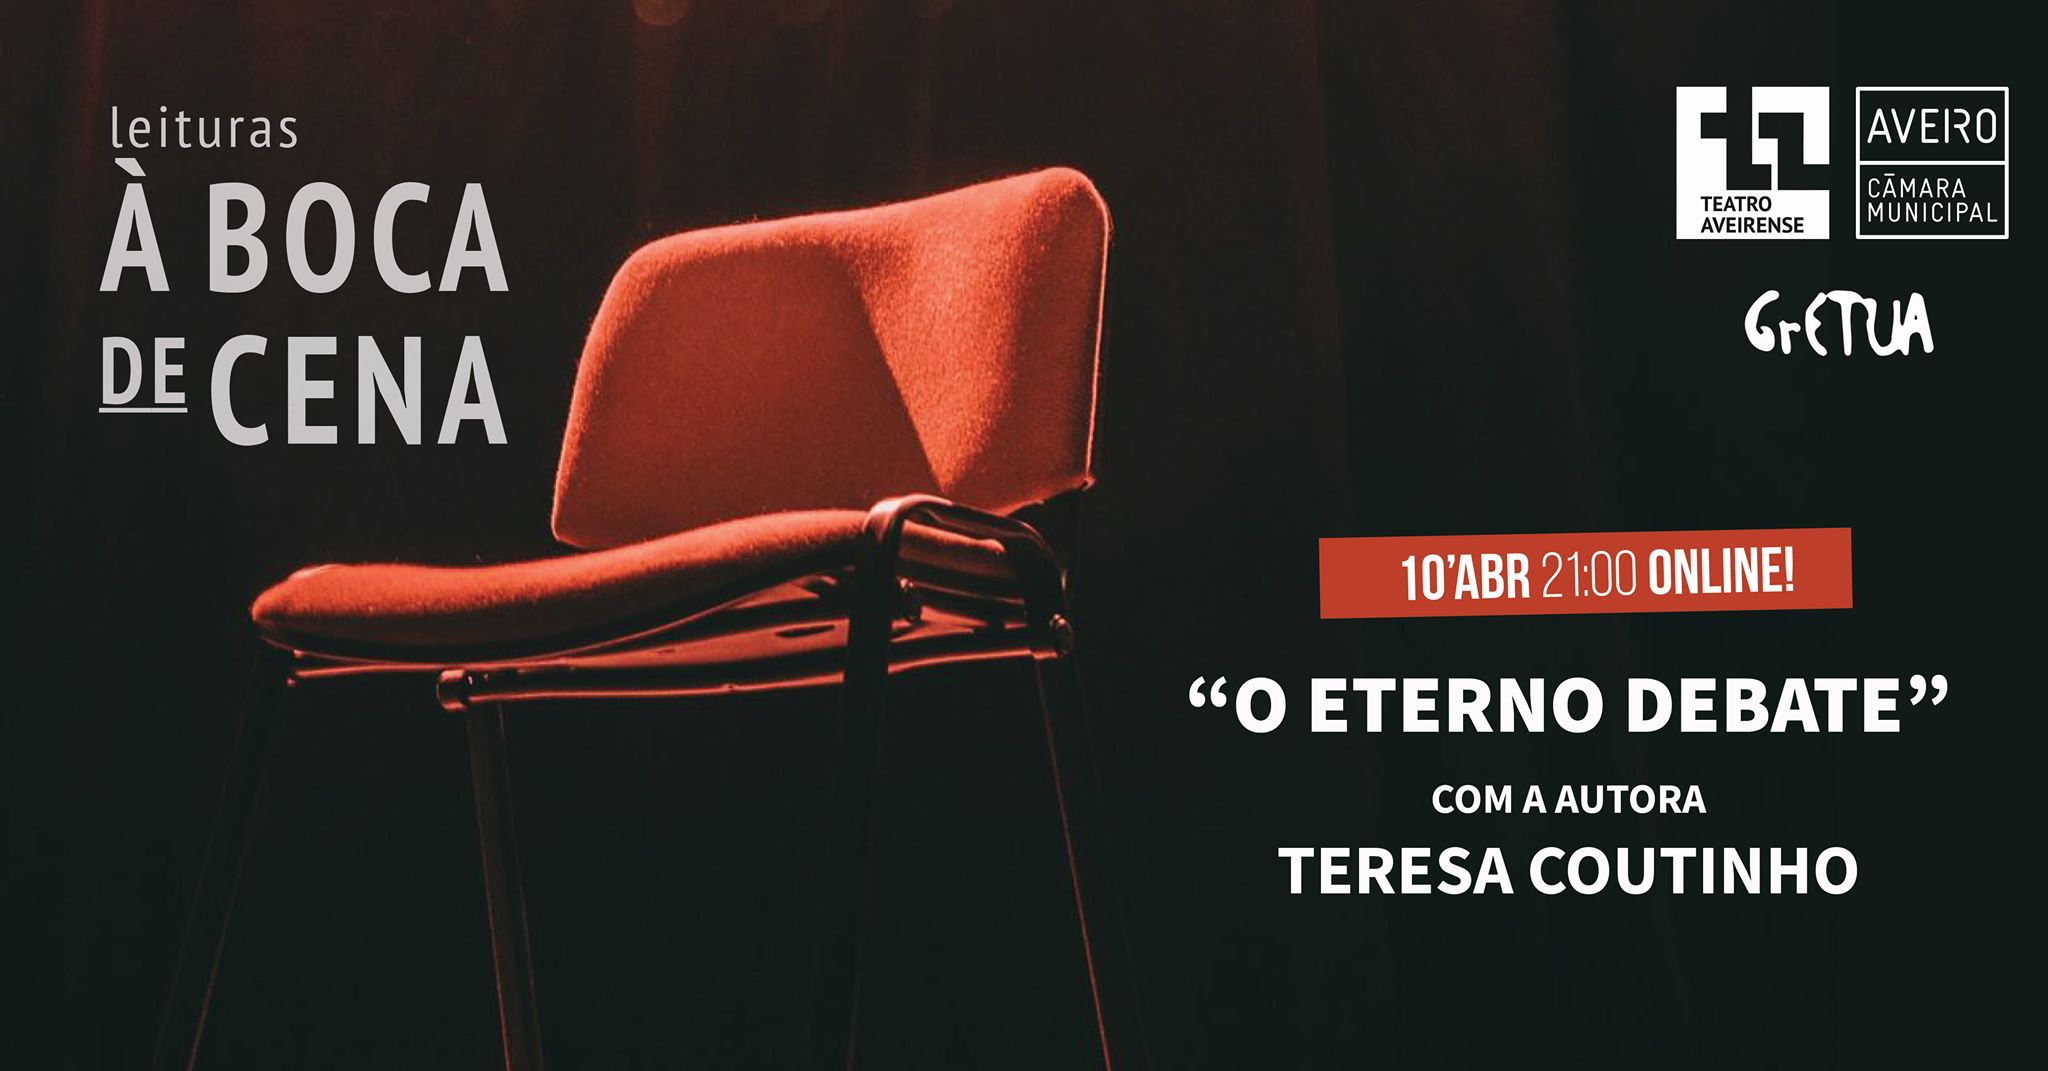 À Boca de Cena 'O Eterno Debate' com Teresa Coutinho